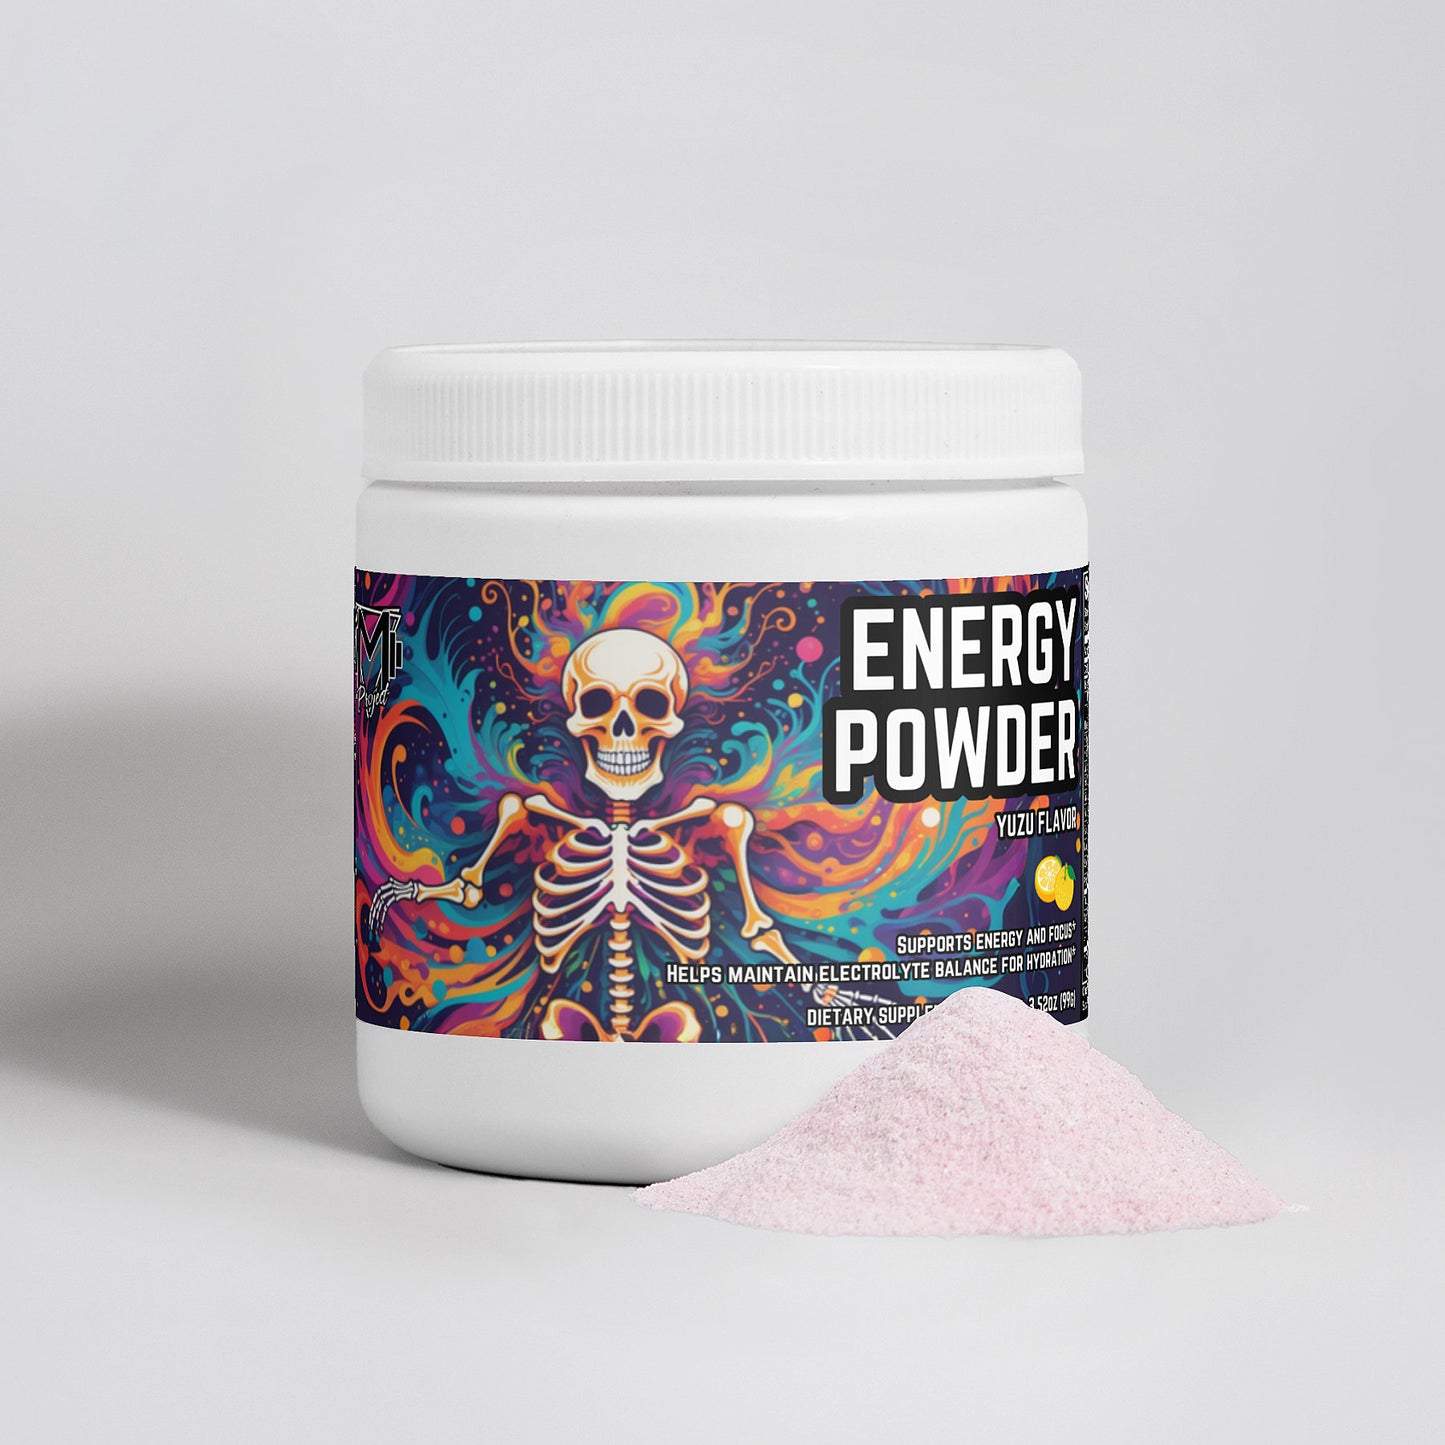 Energy Powder (Yuzu Flavor) by Project M